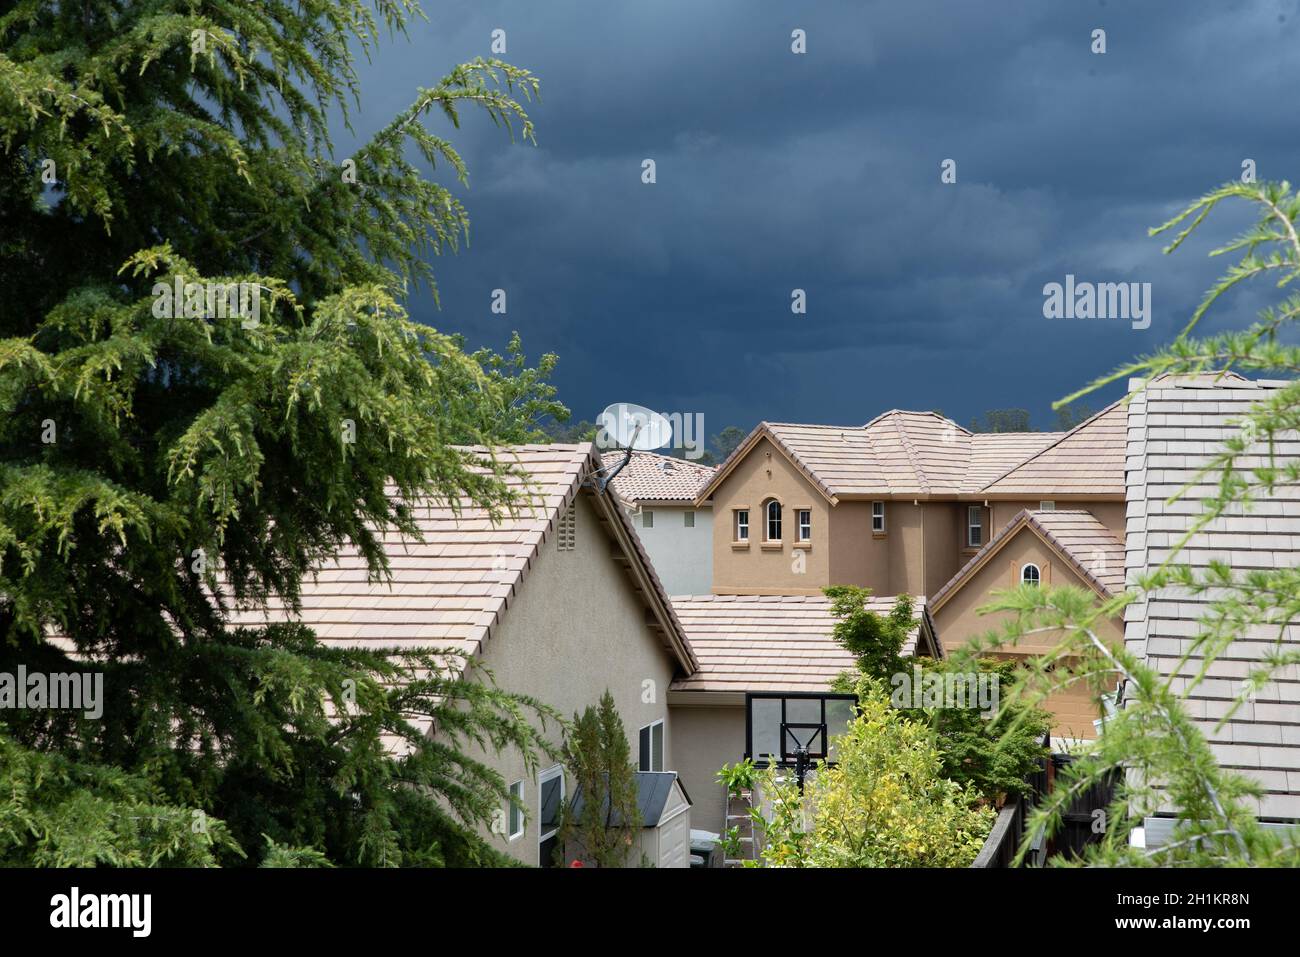 Auf dem Dach eines Vorstadthauses mit riesigen Sturmwolken am Himmel erscheint eine Einzelschüssel-Satellitenschüssel. Stockfoto